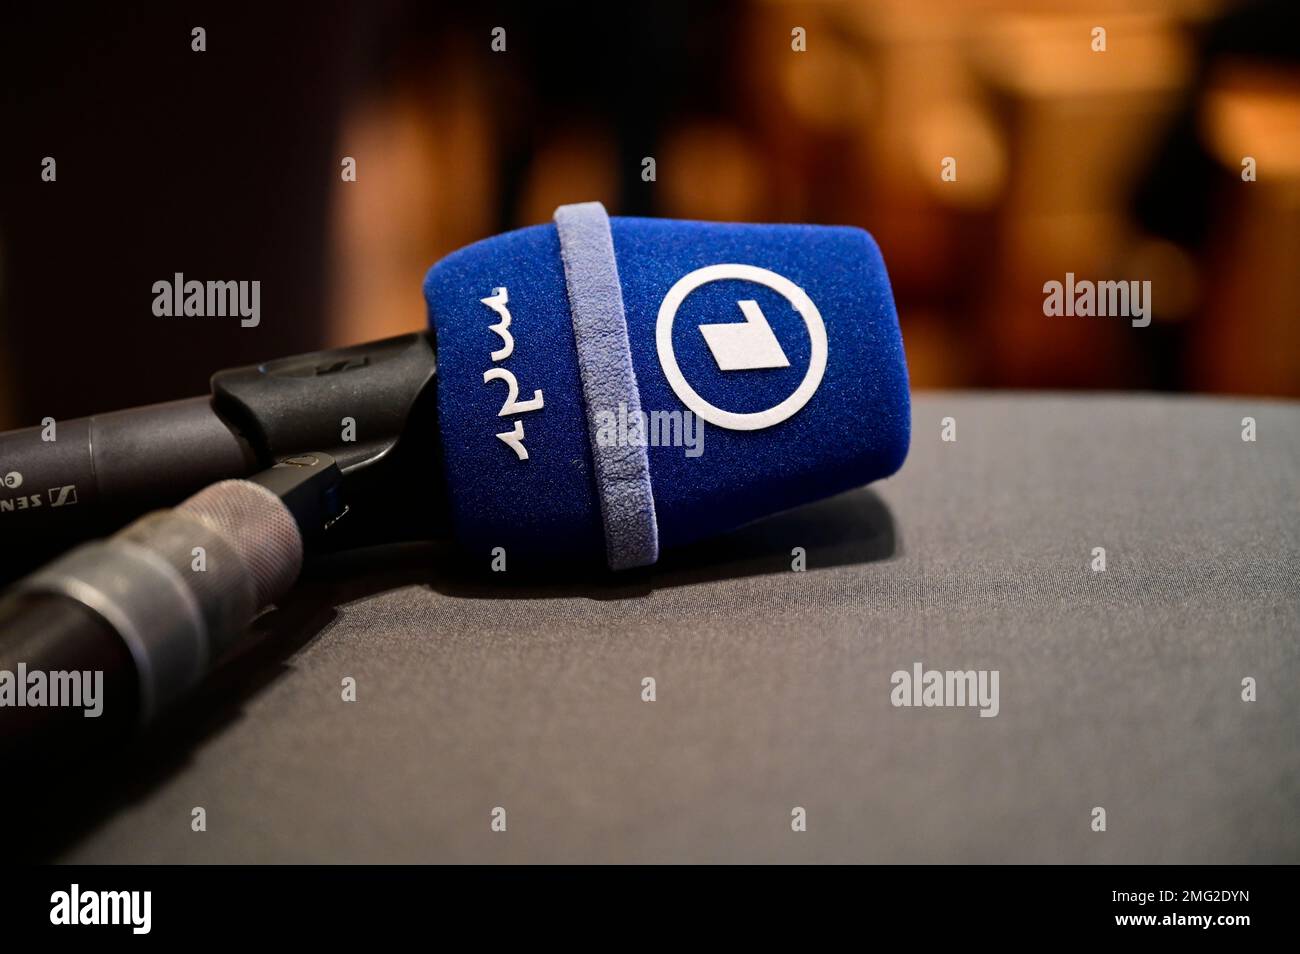 Themenbild, Symbolfoto, die öffentlich-rechtlichen Sender, wie ARD, ZDF, MDR, Deutschlandradio, Das Erste, Abo, ARD Brennpunkt, ARD-App, logo ARD, ARD Banque D'Images